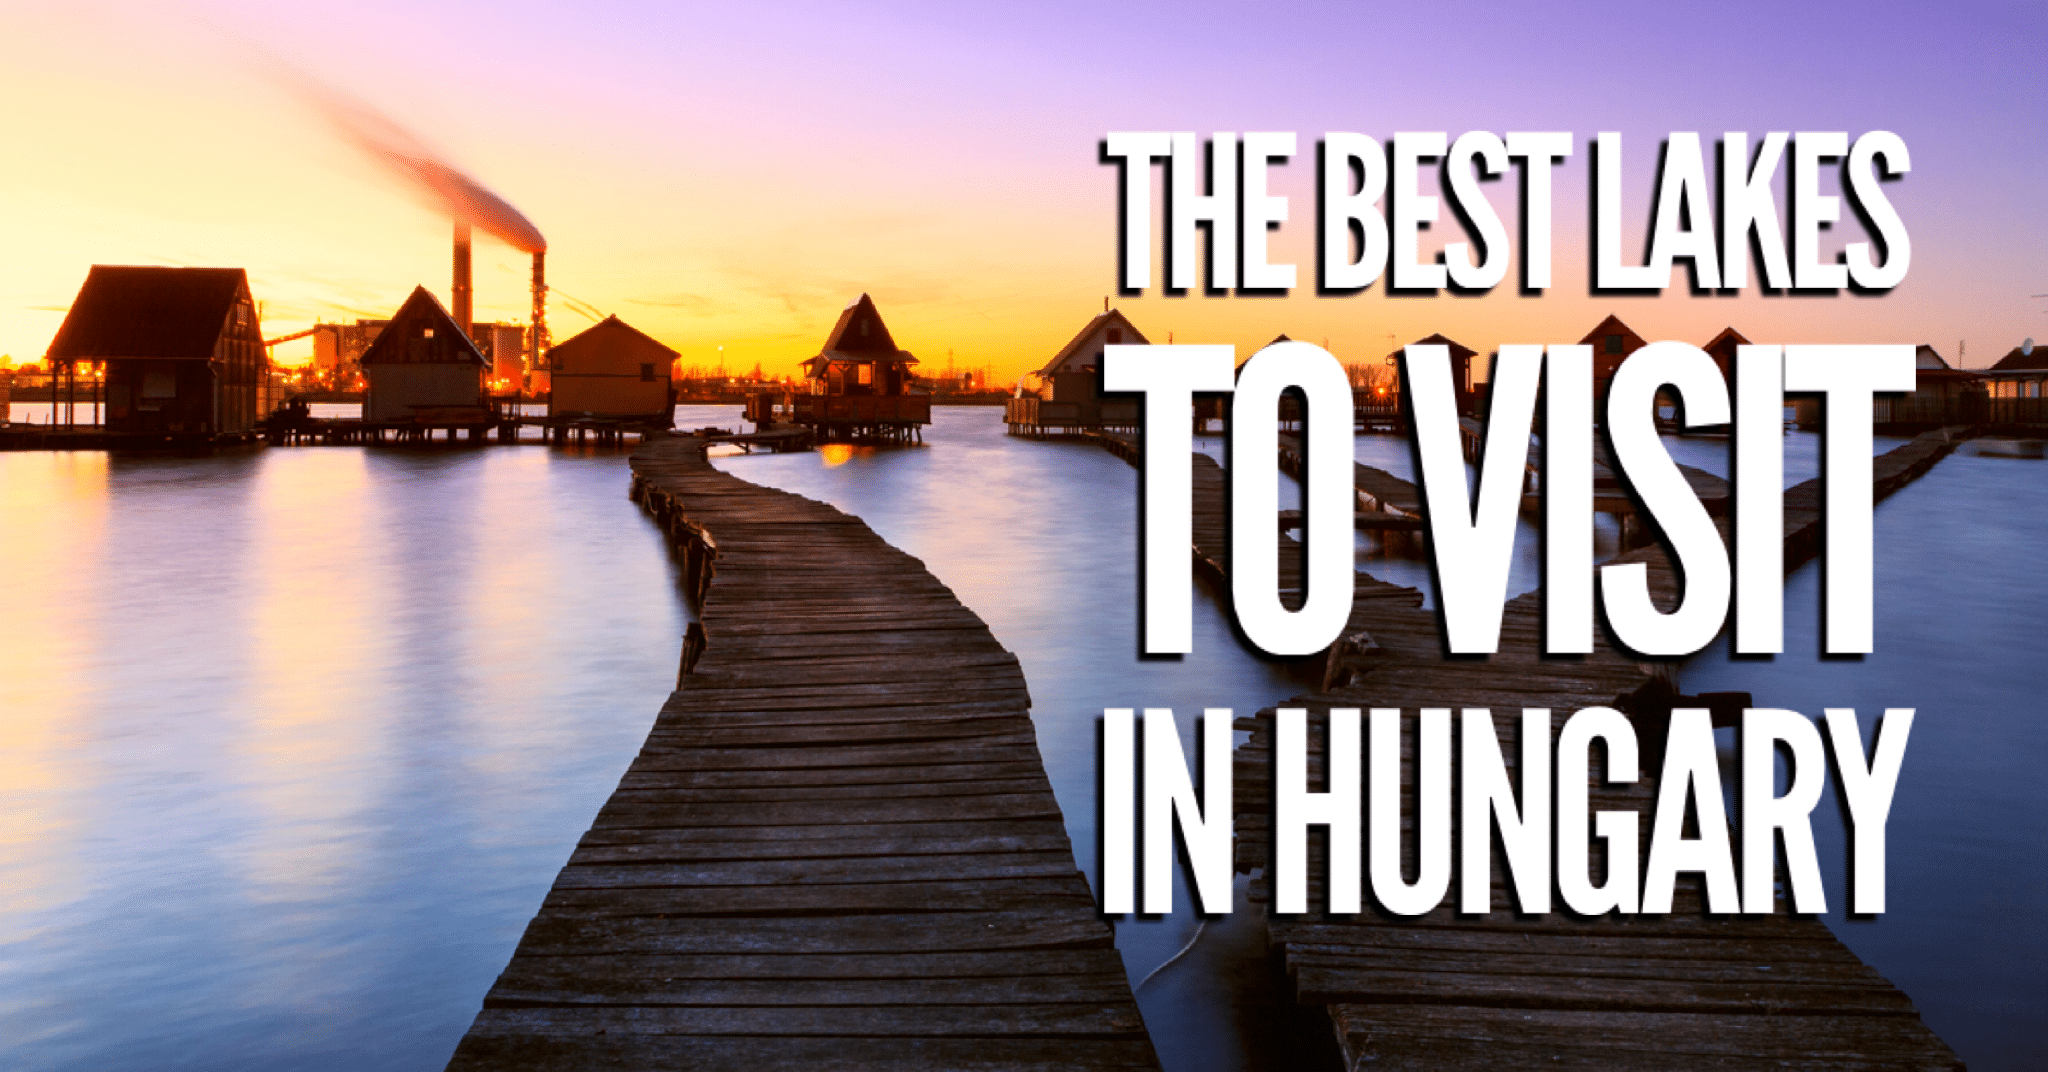 5 Perc Angol: The best lakes to visit in Hungary – Kirándulás a legszebb magyar tavakhoz